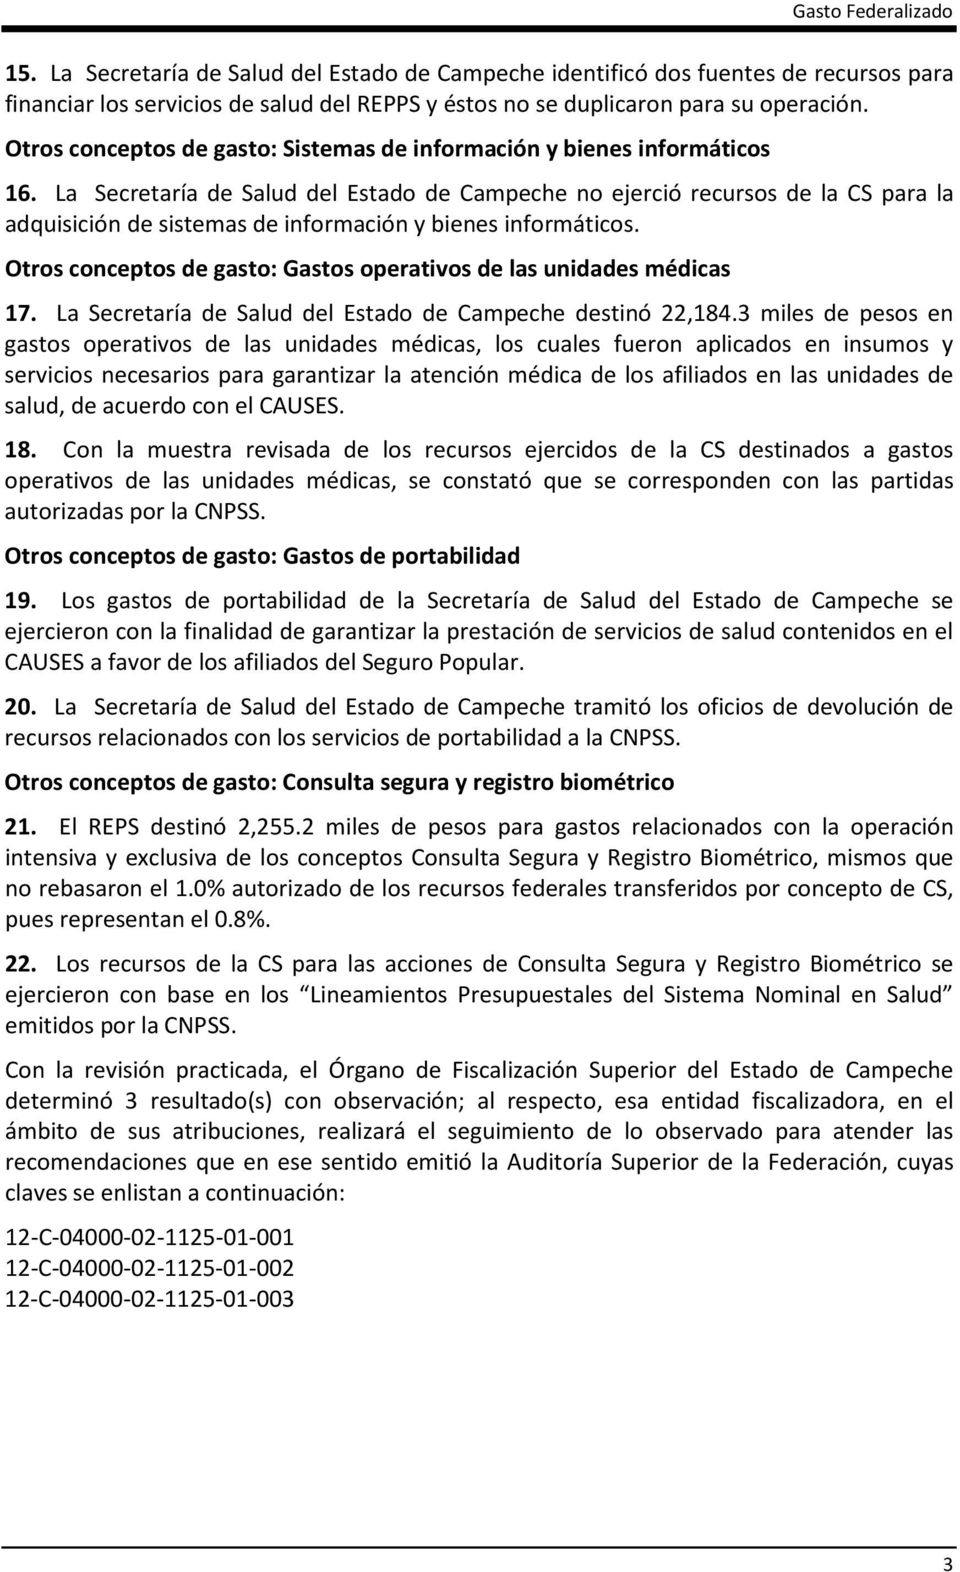 La Secretaría de Salud del Estado de Campeche no ejerció recursos de la CS para la adquisición de sistemas de información y bienes informáticos.